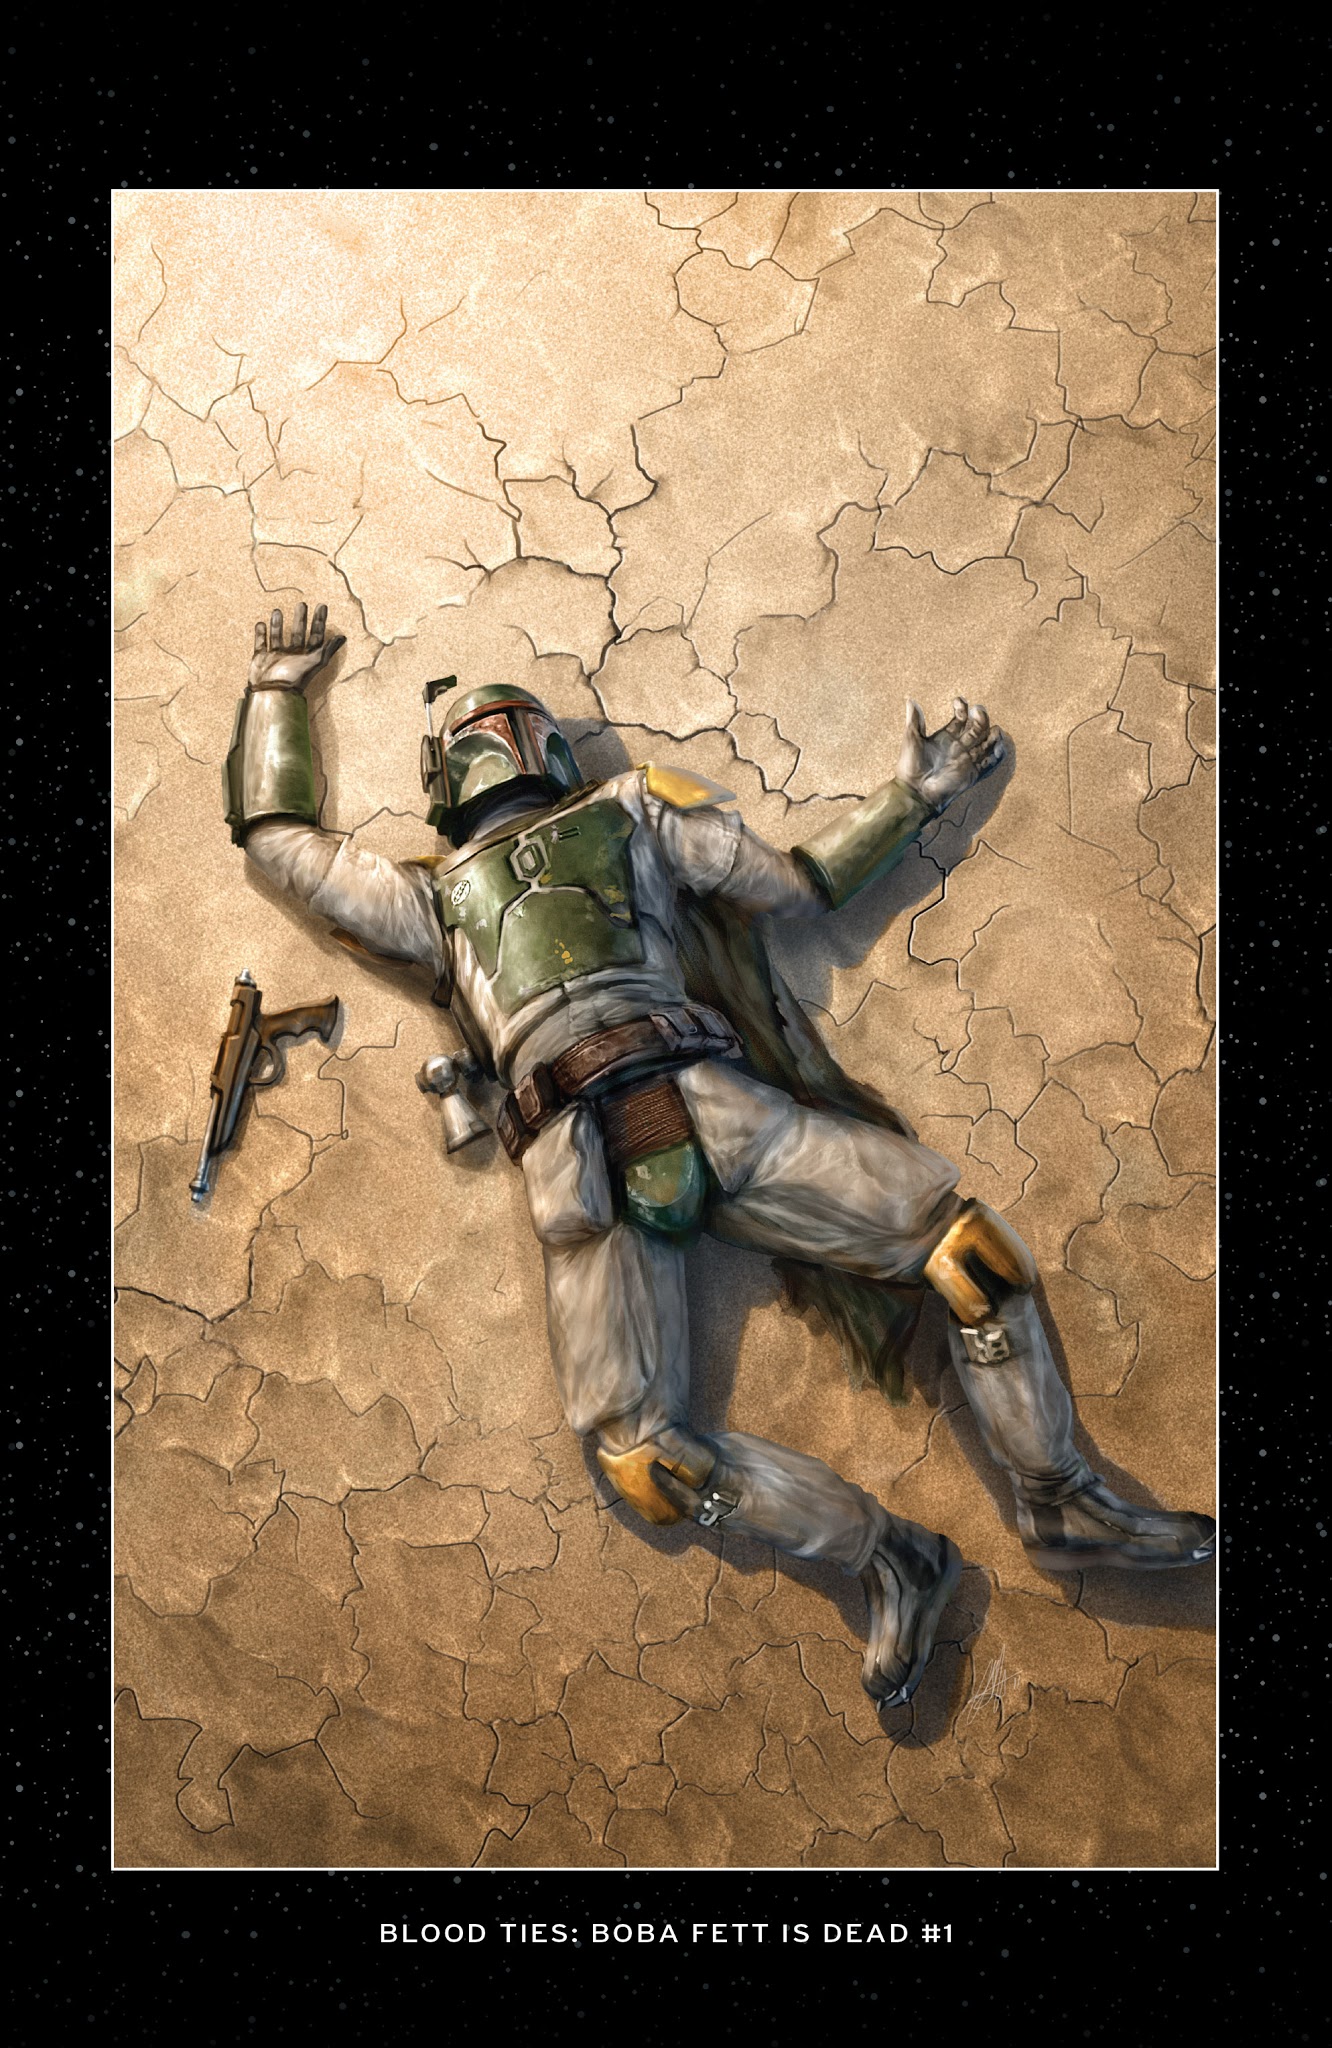 Read online Star Wars: Blood Ties - Boba Fett is Dead comic -  Issue # TPB - 6